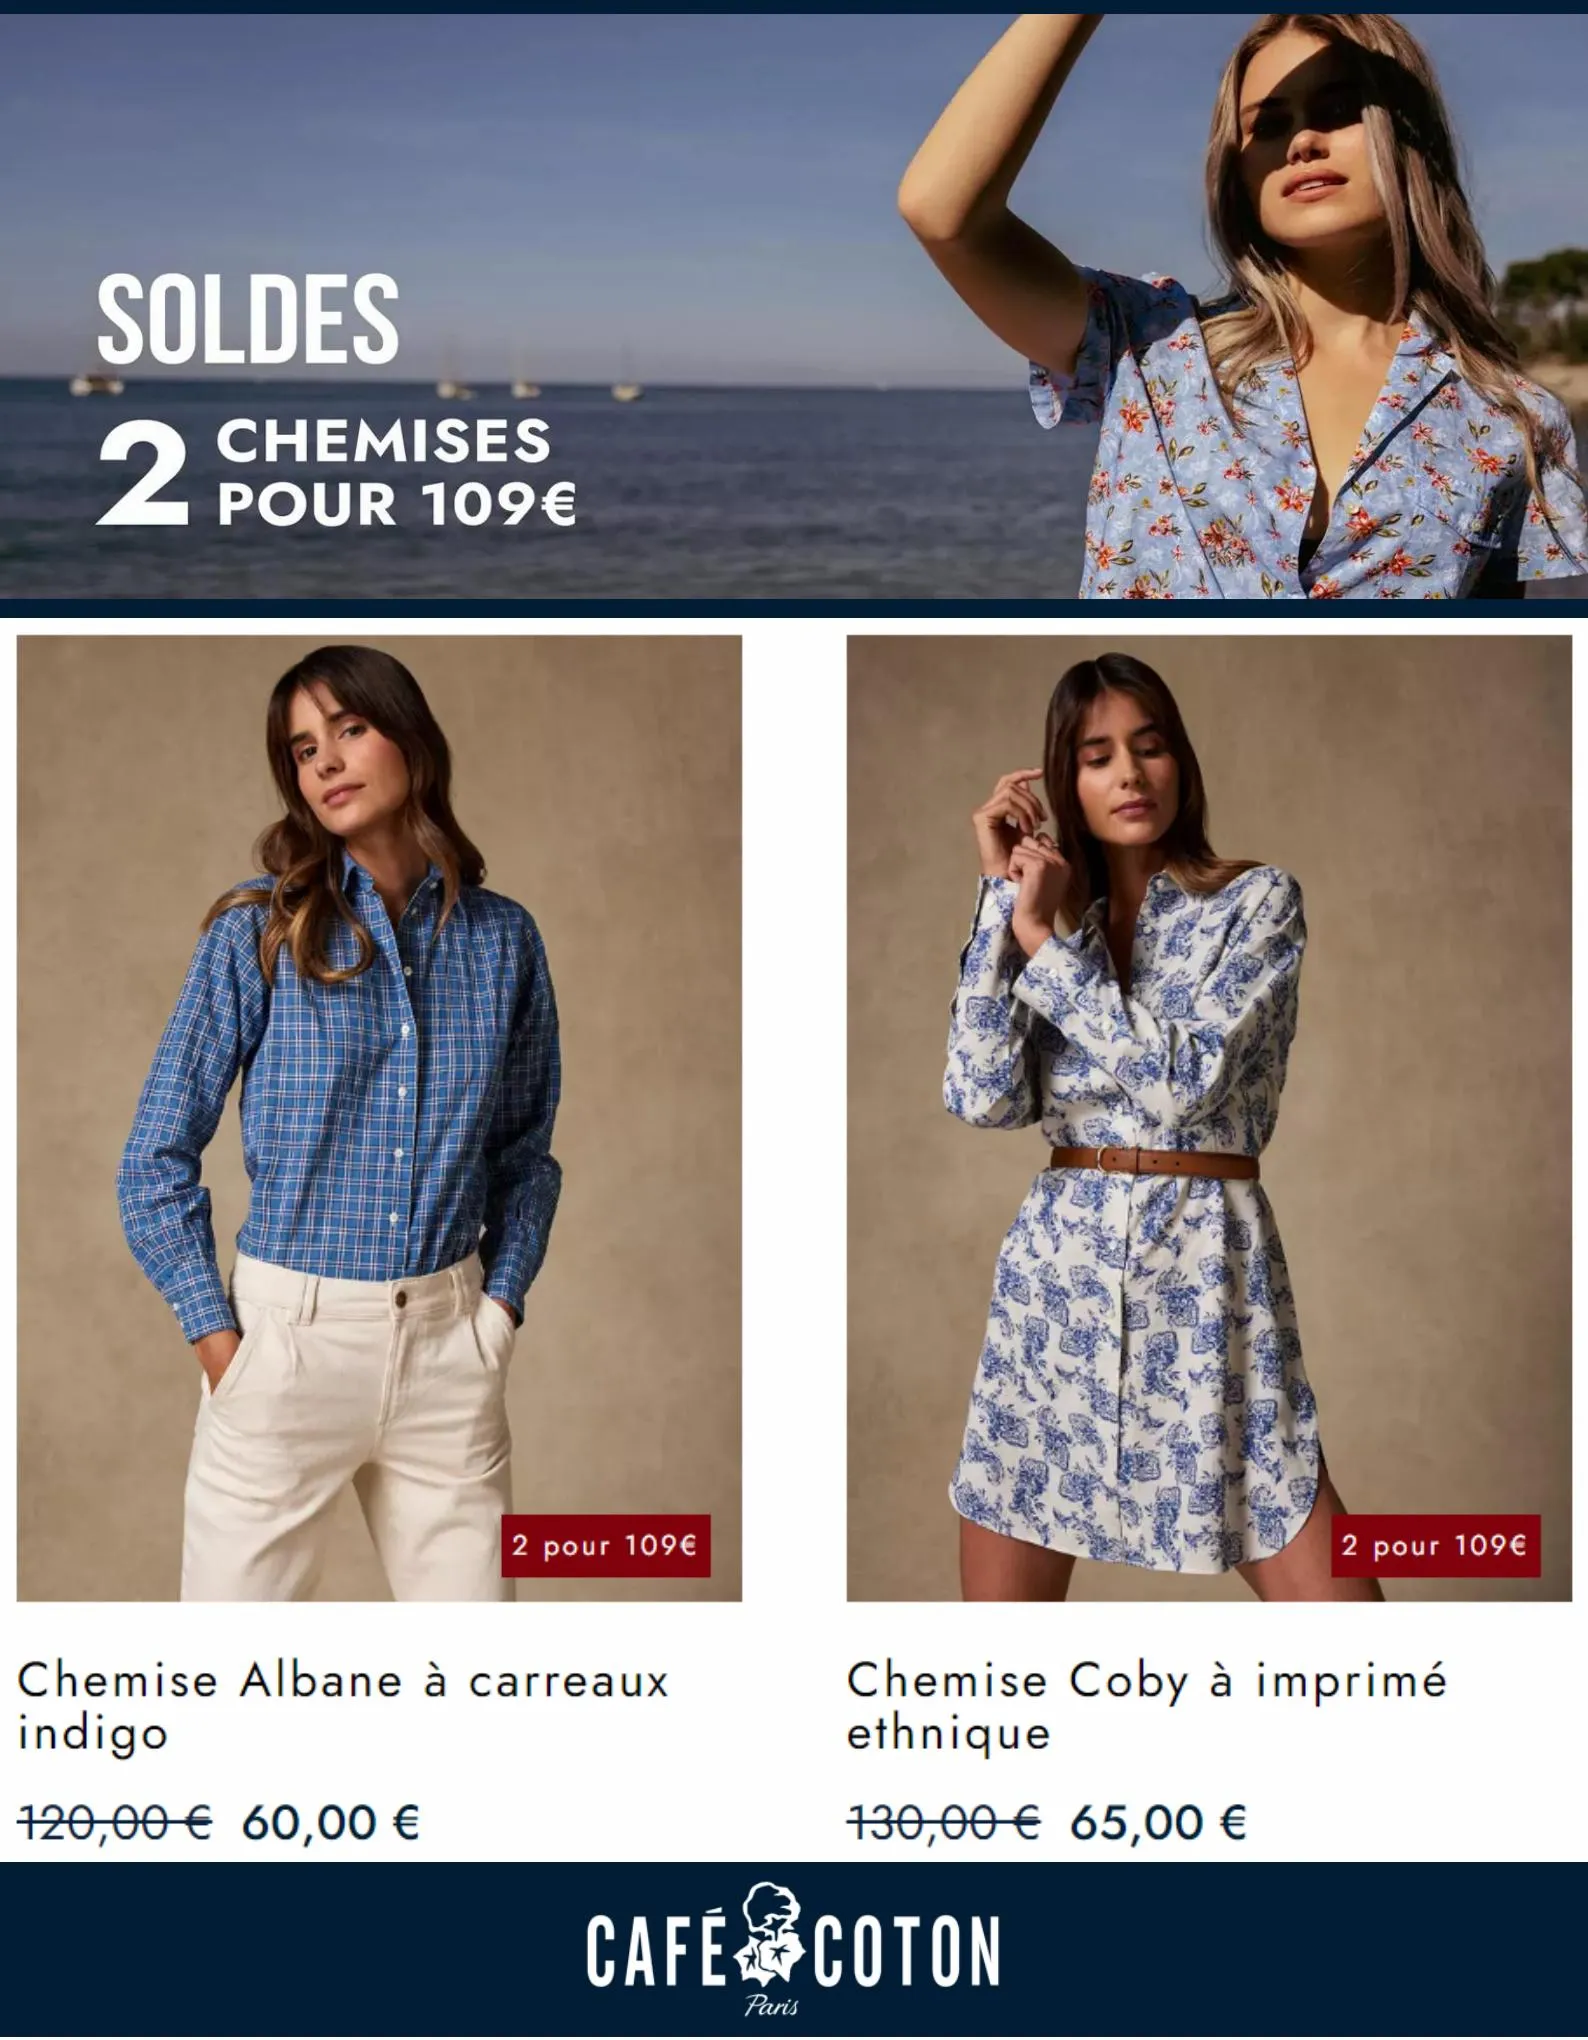 Catalogue Soldes 2 Chemises pour 109€, page 00004